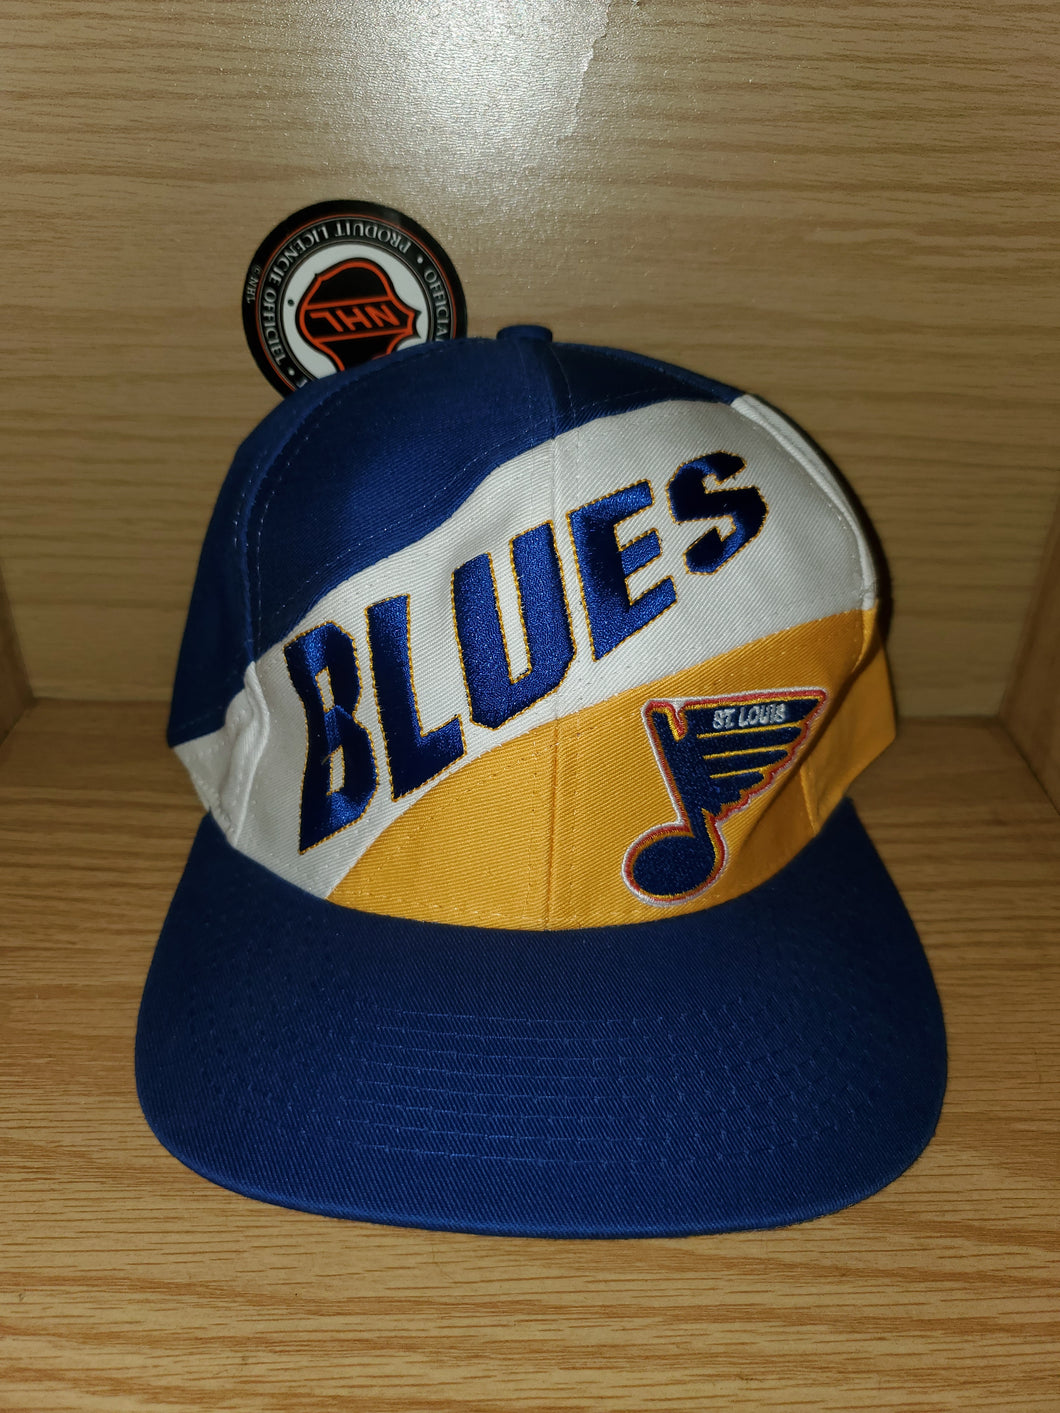 Vintage St. Louis Blues NHL Hat